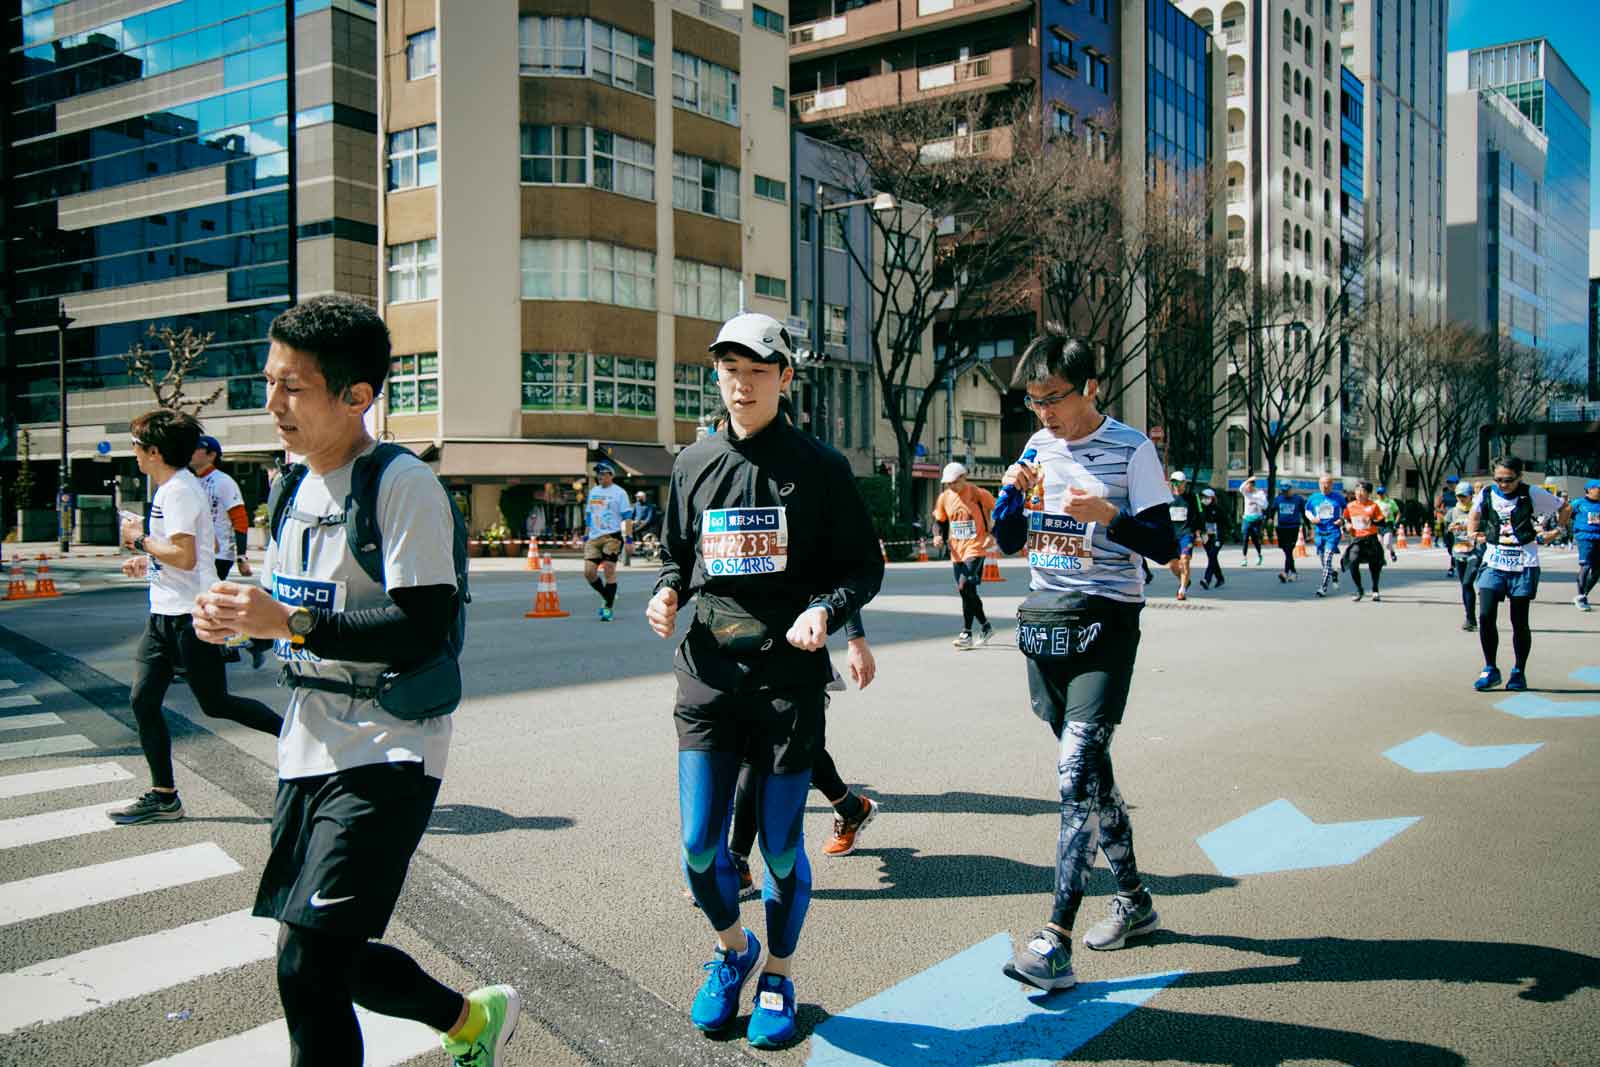 東京マラソン2021を走るターザン/Tarzan編集部員のアサクラ